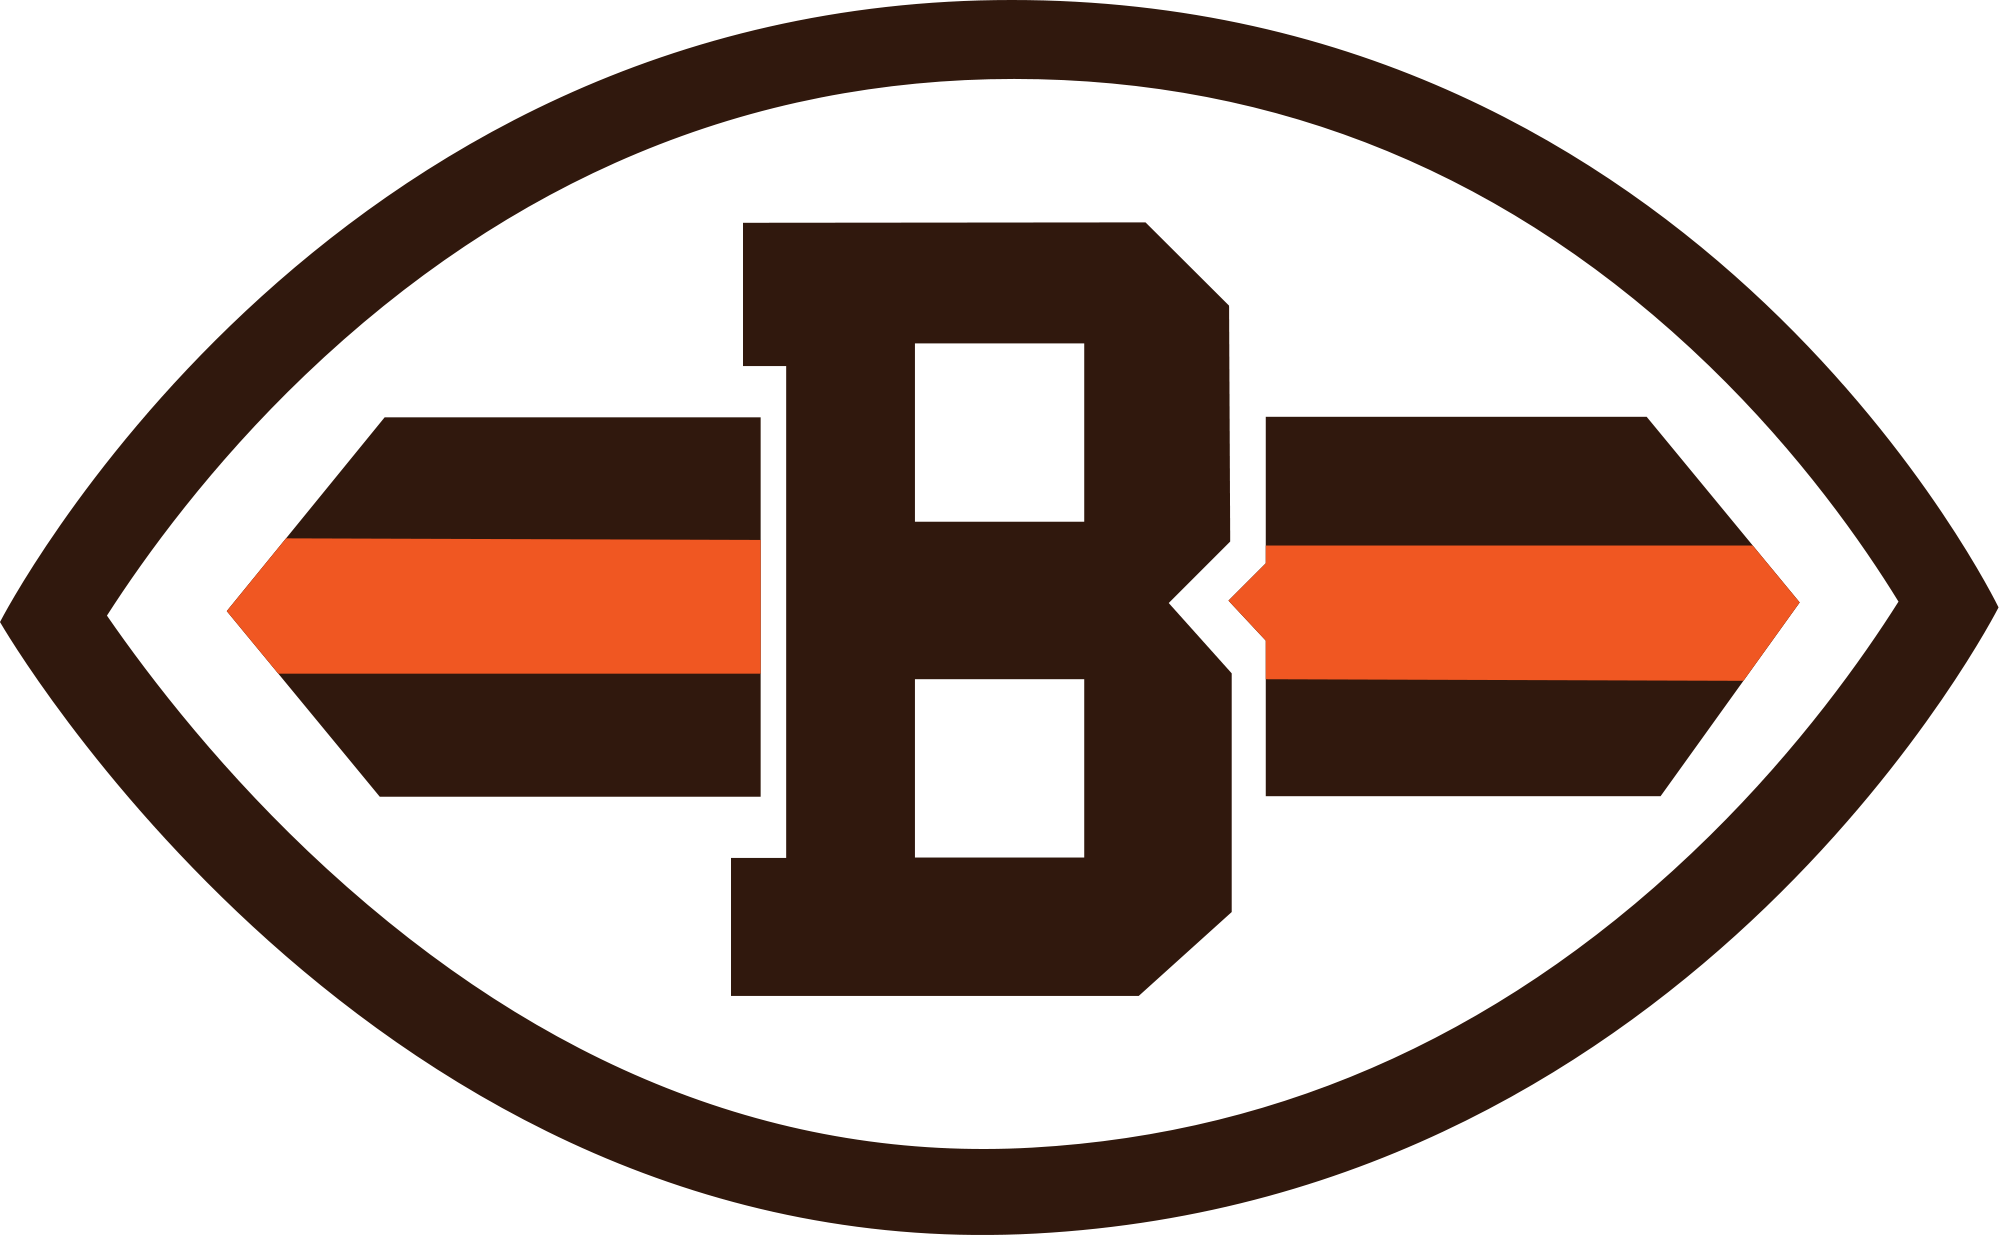 Cleveland Browns logo font - 